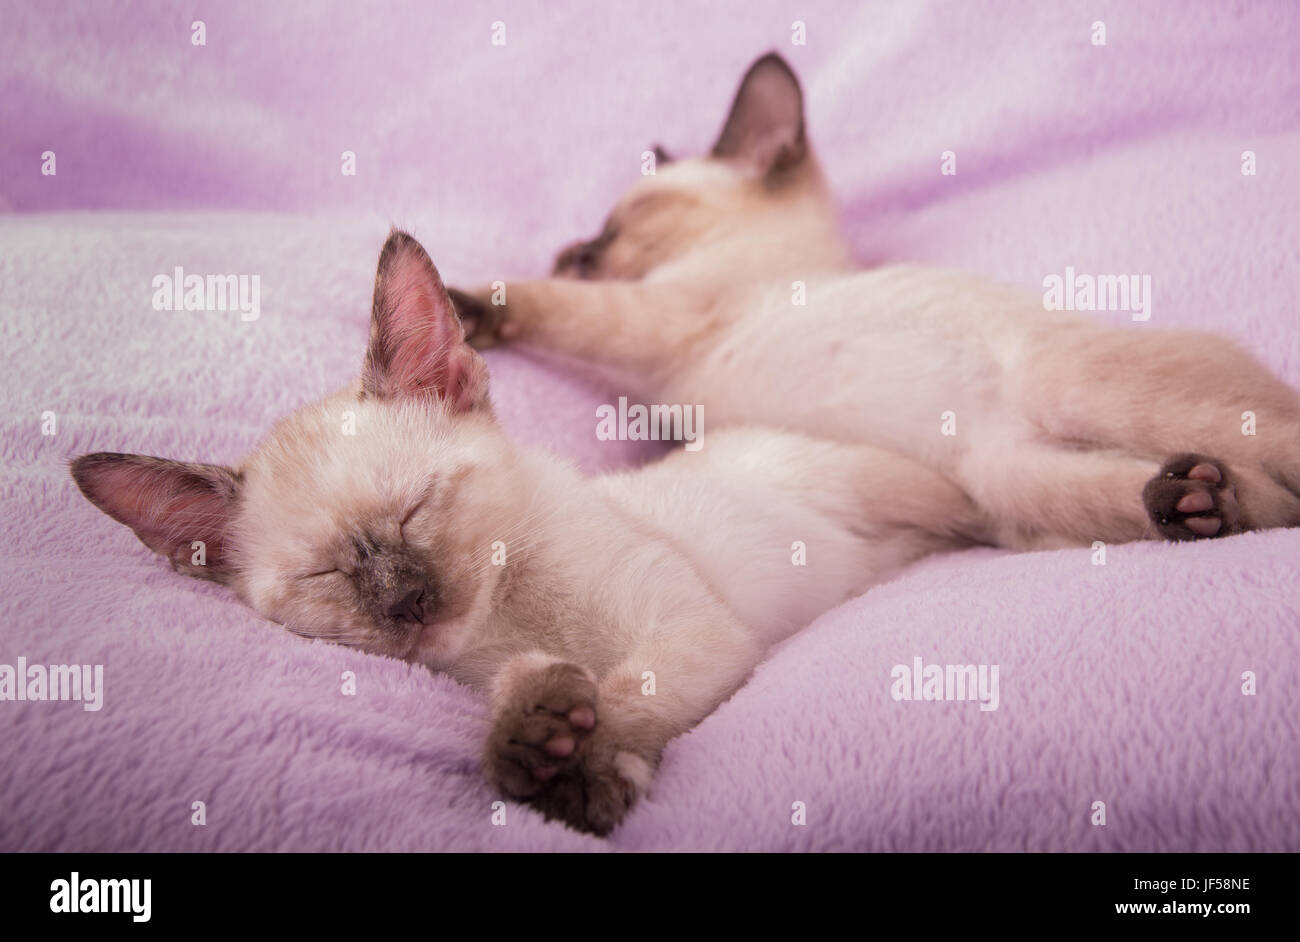 Chatons siamois endormi sur un coussin violet clair Banque D'Images